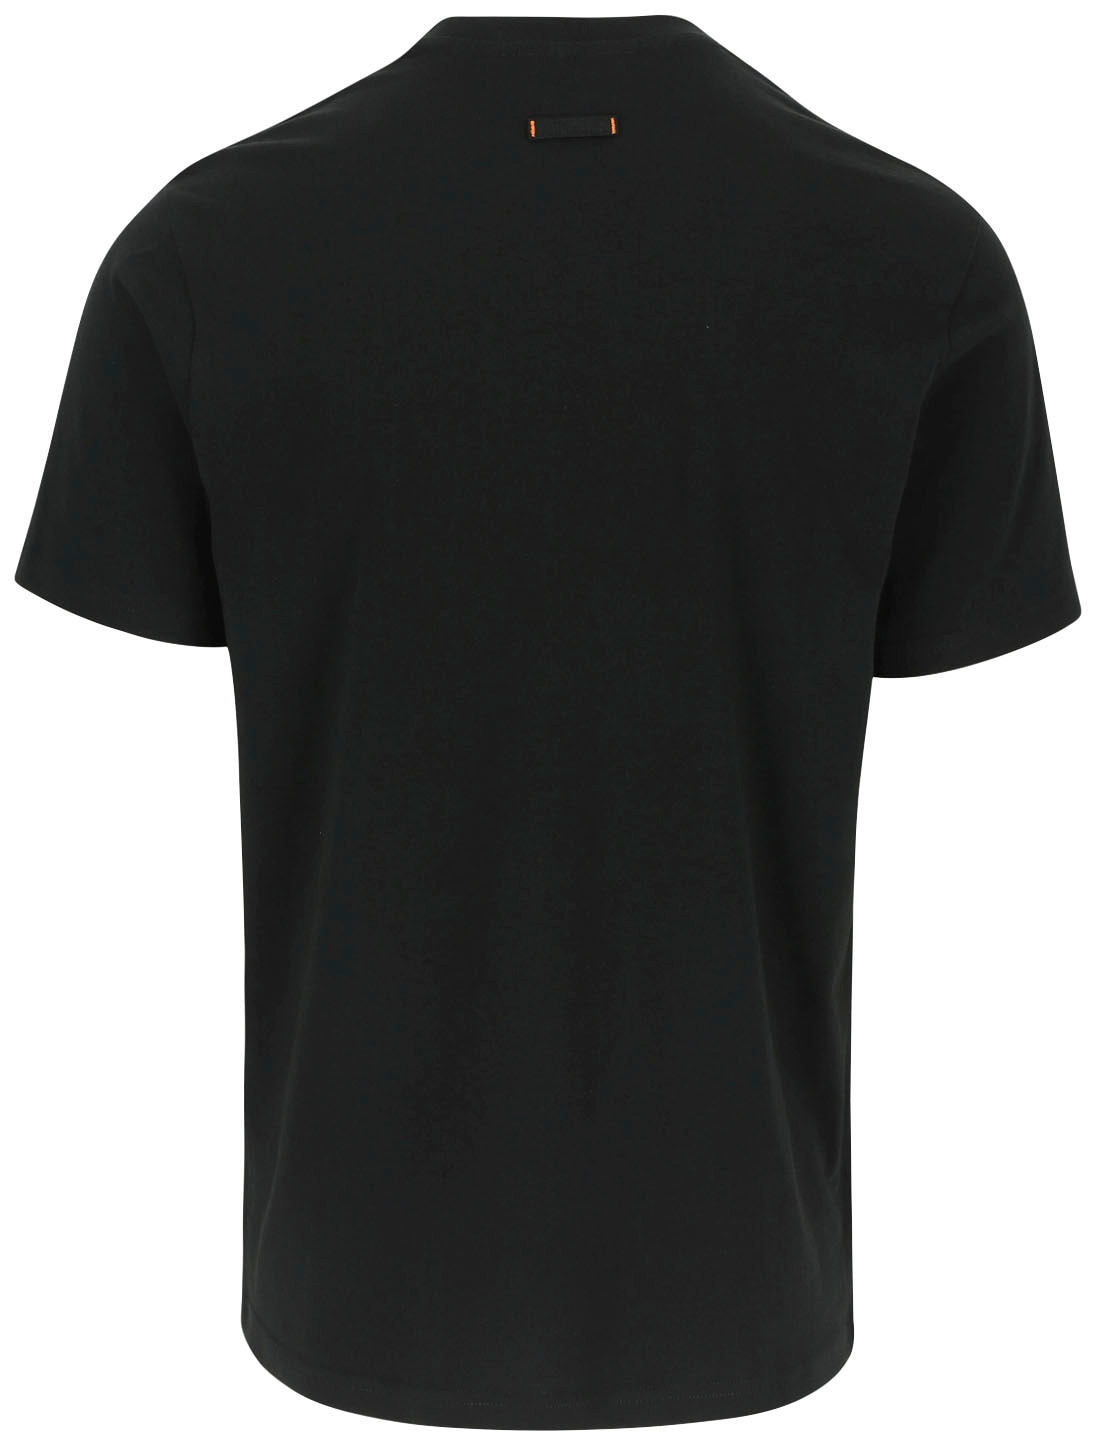 Herock T-Shirt »ENI«, Baumwolle, Rundhals, mit Herock®-Aufdruck, angenehmes  Tragegefühl online bestellen | BAUR